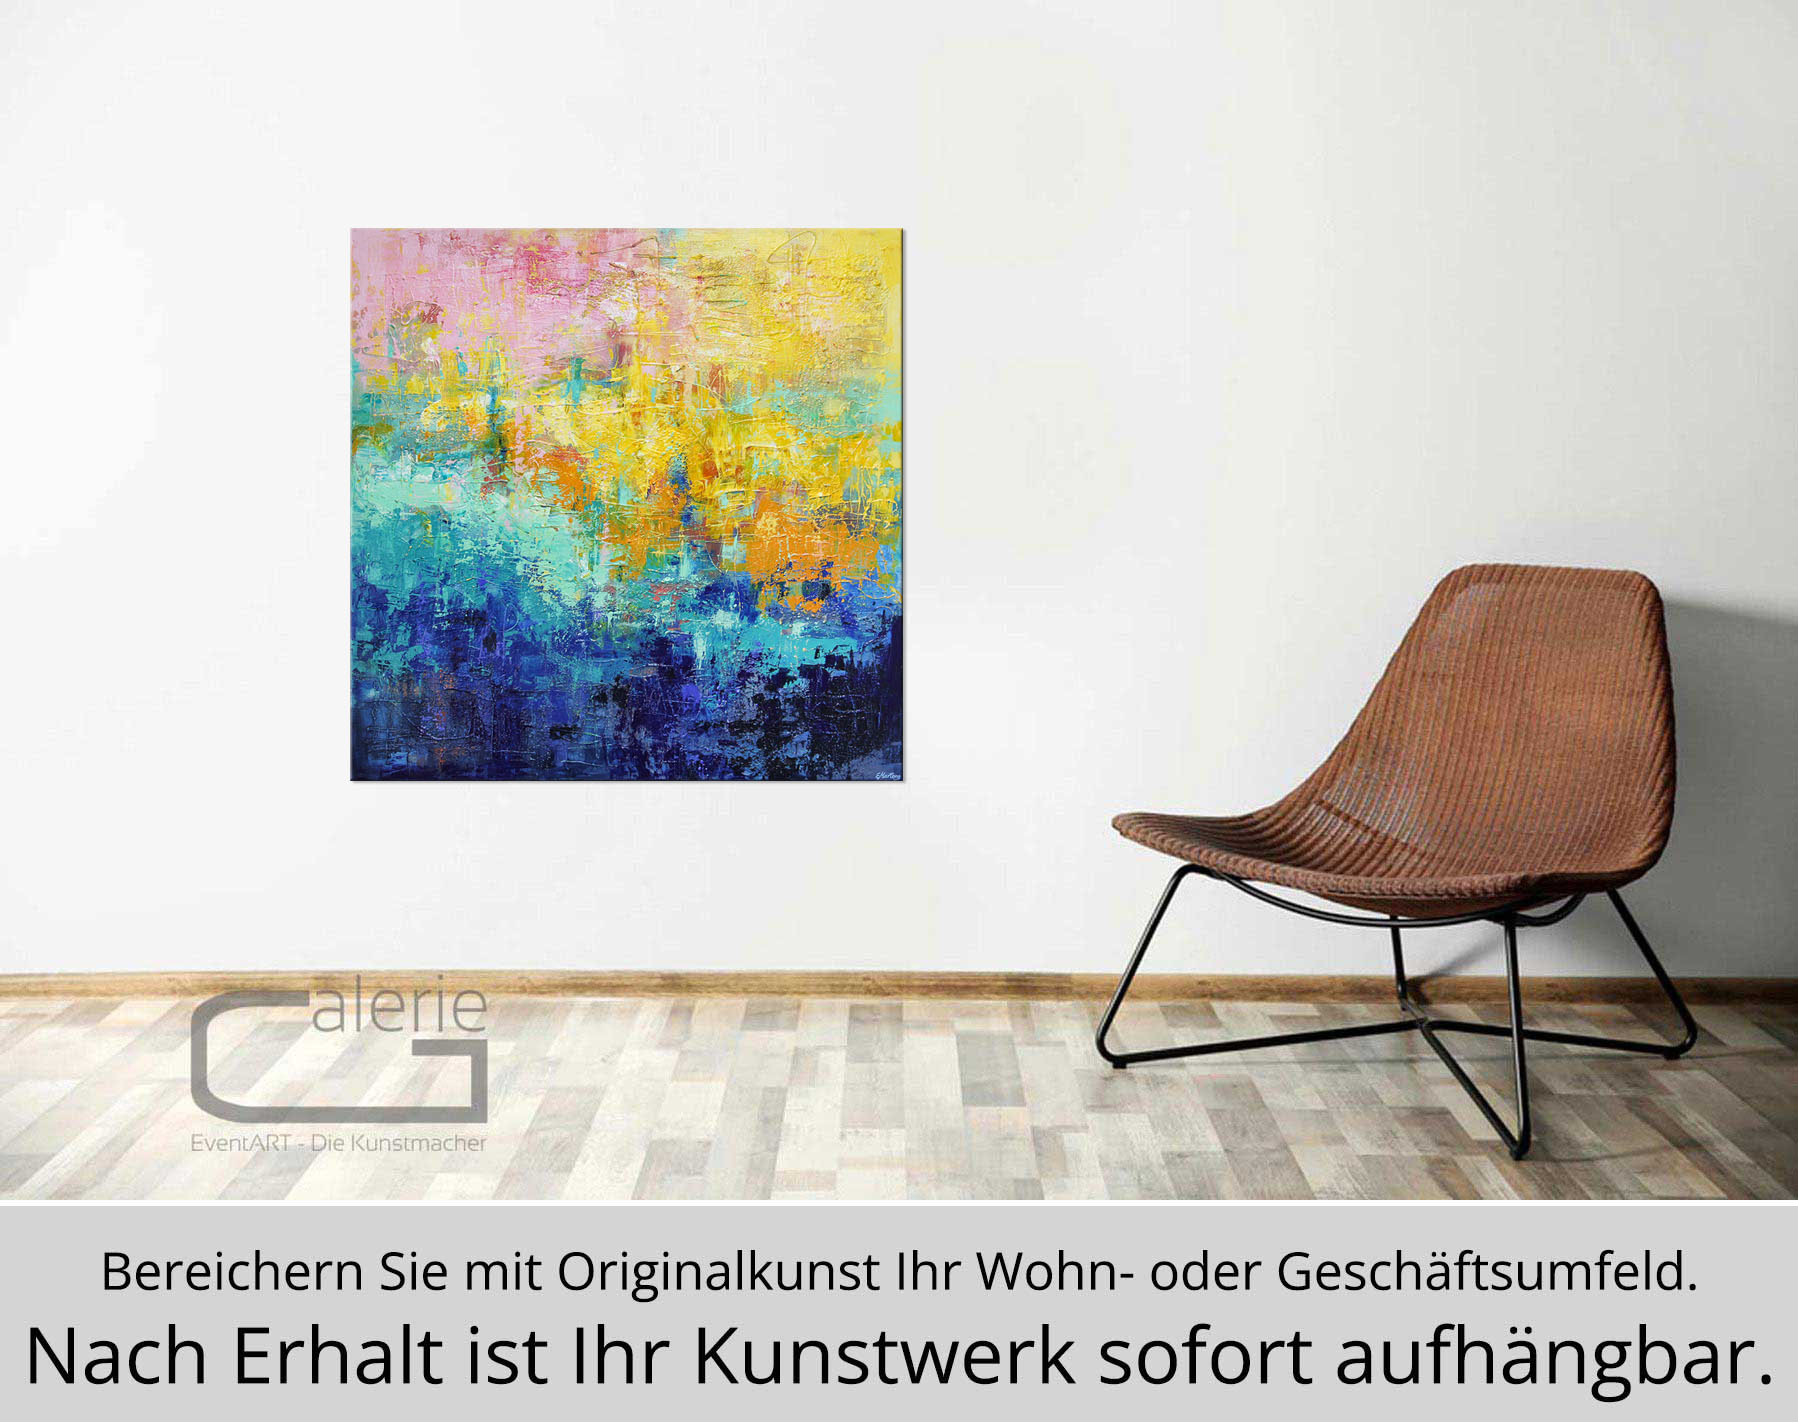 Abstrakte Malerei von Ewa Martens: "Das Blaue Wunder", Original/Unikat